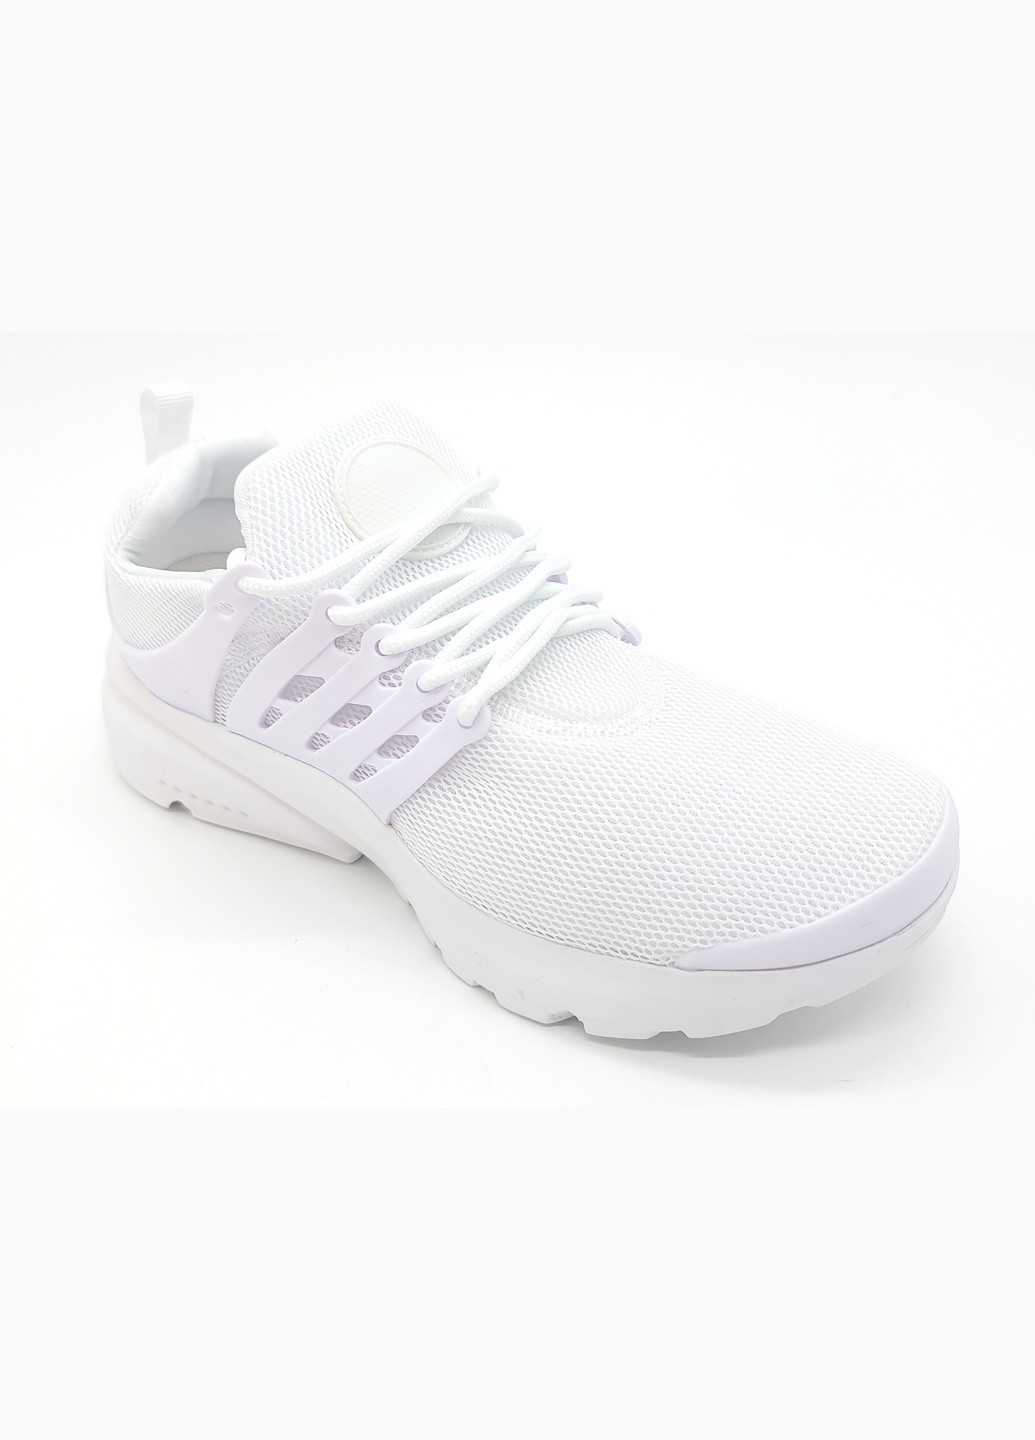 Белые всесезонные женские кроссовки белые текстиль sl-15-3 24 см (р) Stilli